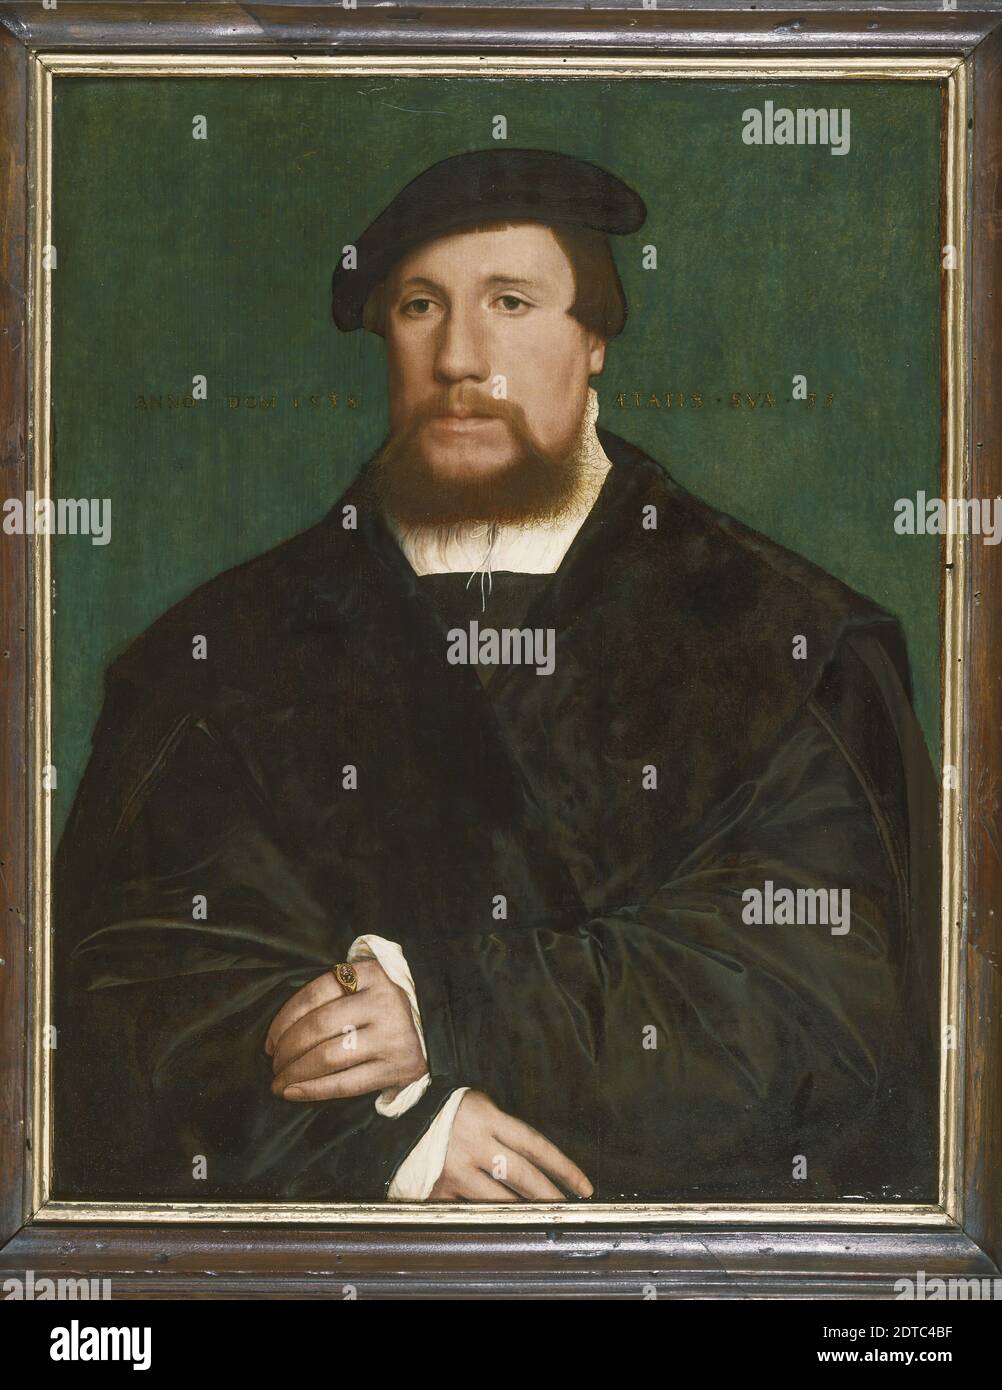 Künstler: Hans Holbein der Jüngere, Deutsch, 1497/98–1543, Portrait eines Hanseatischen Händlers, Öl auf Tafel, ungerahmt: 49.6 × 39 cm (19 1/2 × 15 3/8 Zoll) gründeten die Kaufleute der Hanse, einer mächtigen deutschen Handelsorganisation, die sich rasch in andere Länder entlang der Ostsee und der Nordsee ausdehnte, ihren englischen Hauptsitz im Londoner Stahlhof. Holbein wurde beauftragt, den Versammlungsraum zu dekorieren und individuelle Porträts der Gildenmitglieder zu produzieren. Diese nehmen alle das gleiche Format an, wobei der Sitter frontal vor einem schmucklosen Hintergrund dargestellt wird. Stockfoto